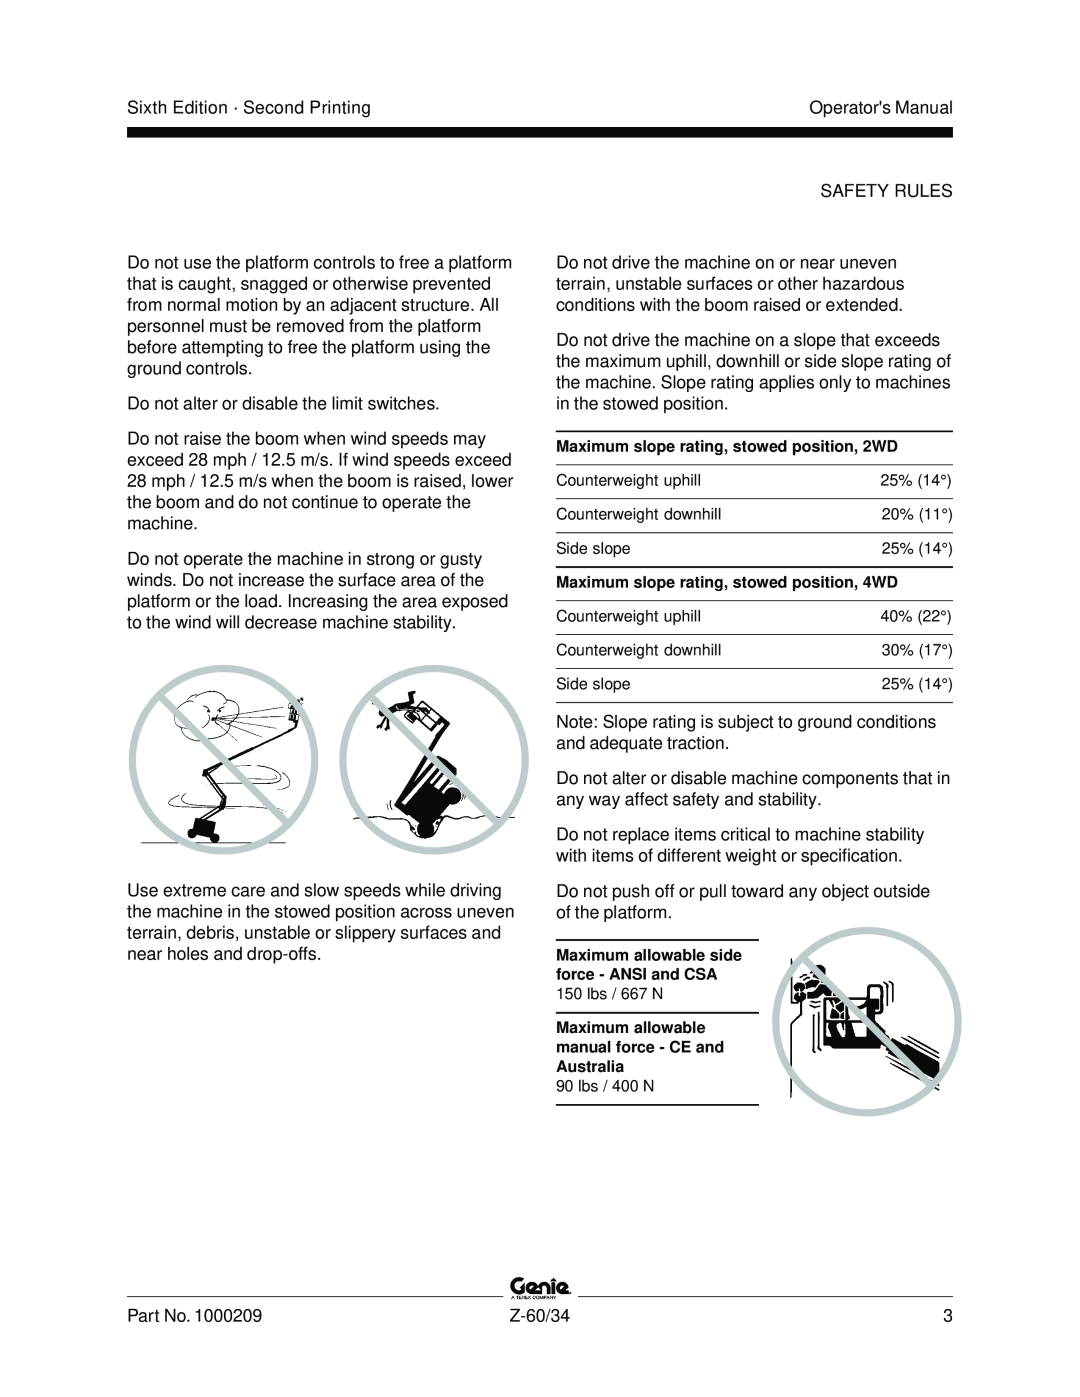 Genie Z-60, Z-34 manual Sixth Edition · Second Printing 